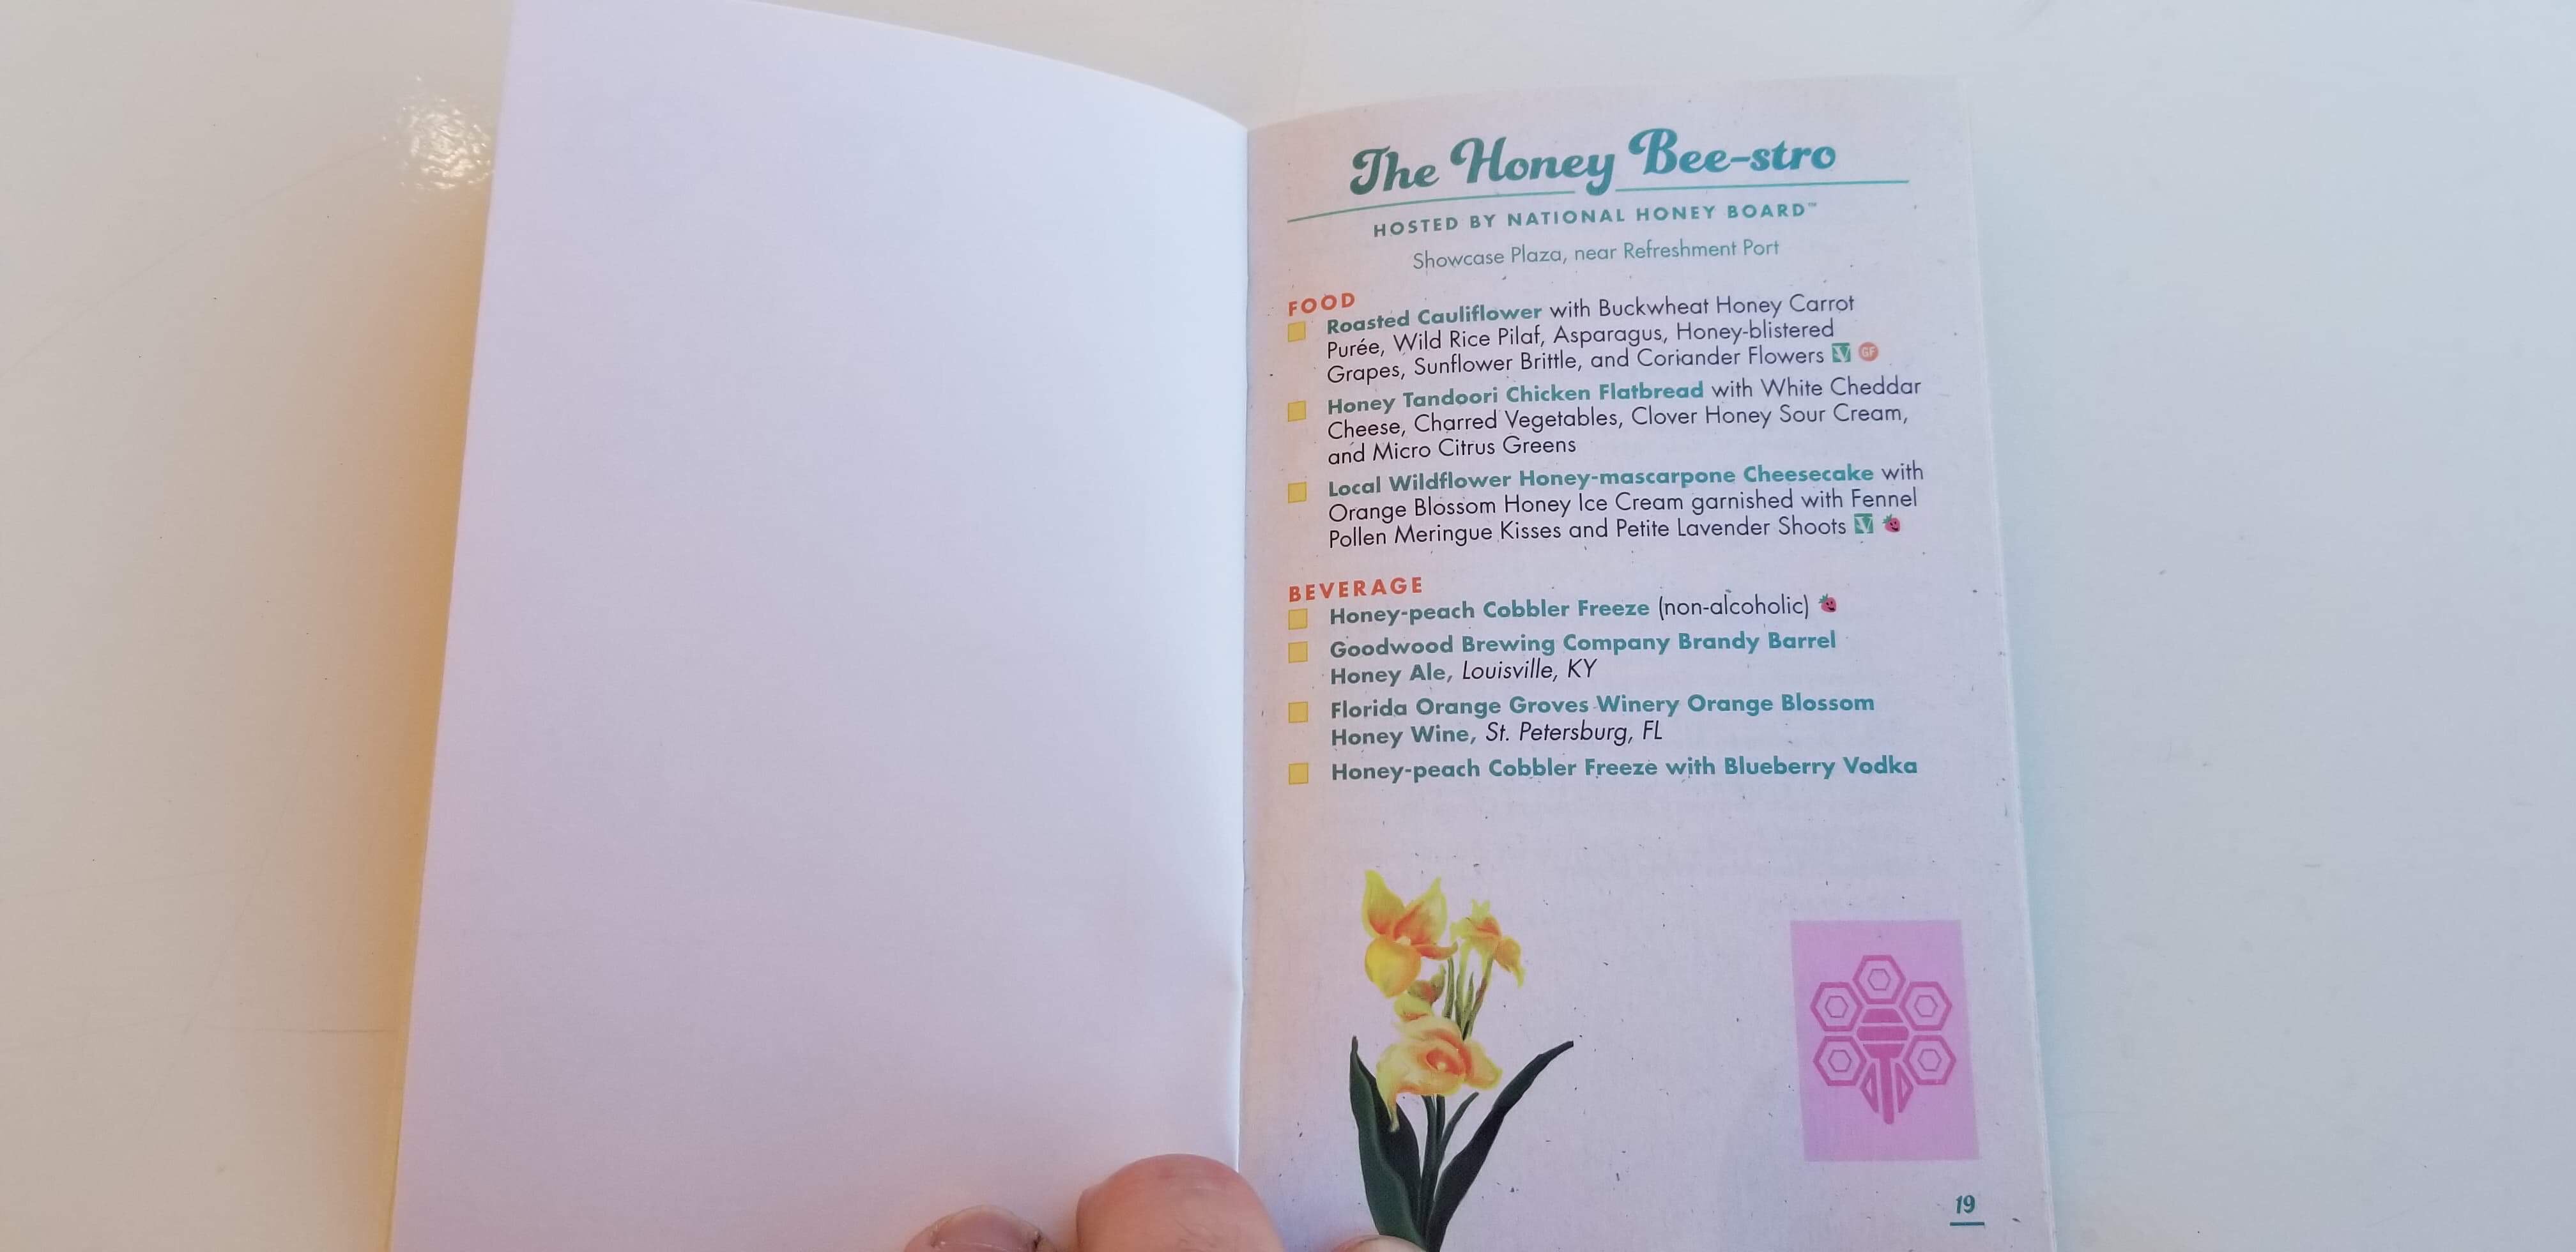 Epcot Flower and Garden Festival Passport Book 2019